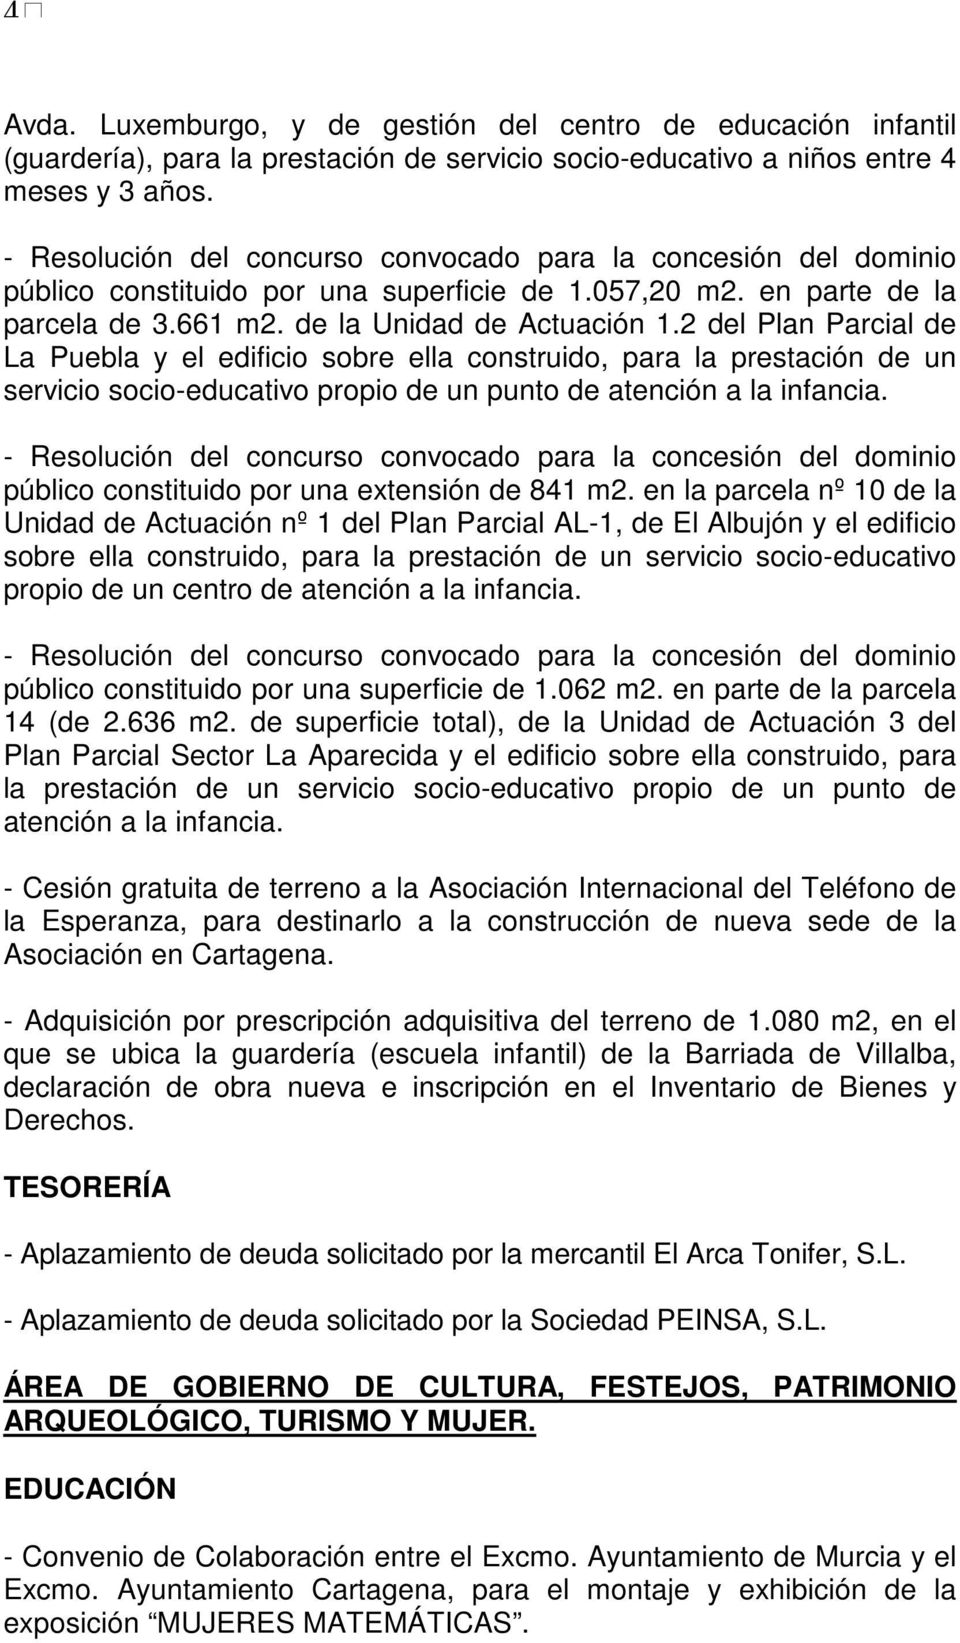 2 del Plan Parcial de La Puebla y el edificio sobre ella construido, para la prestación de un servicio socio-educativo propio de un punto de atención a la infancia.